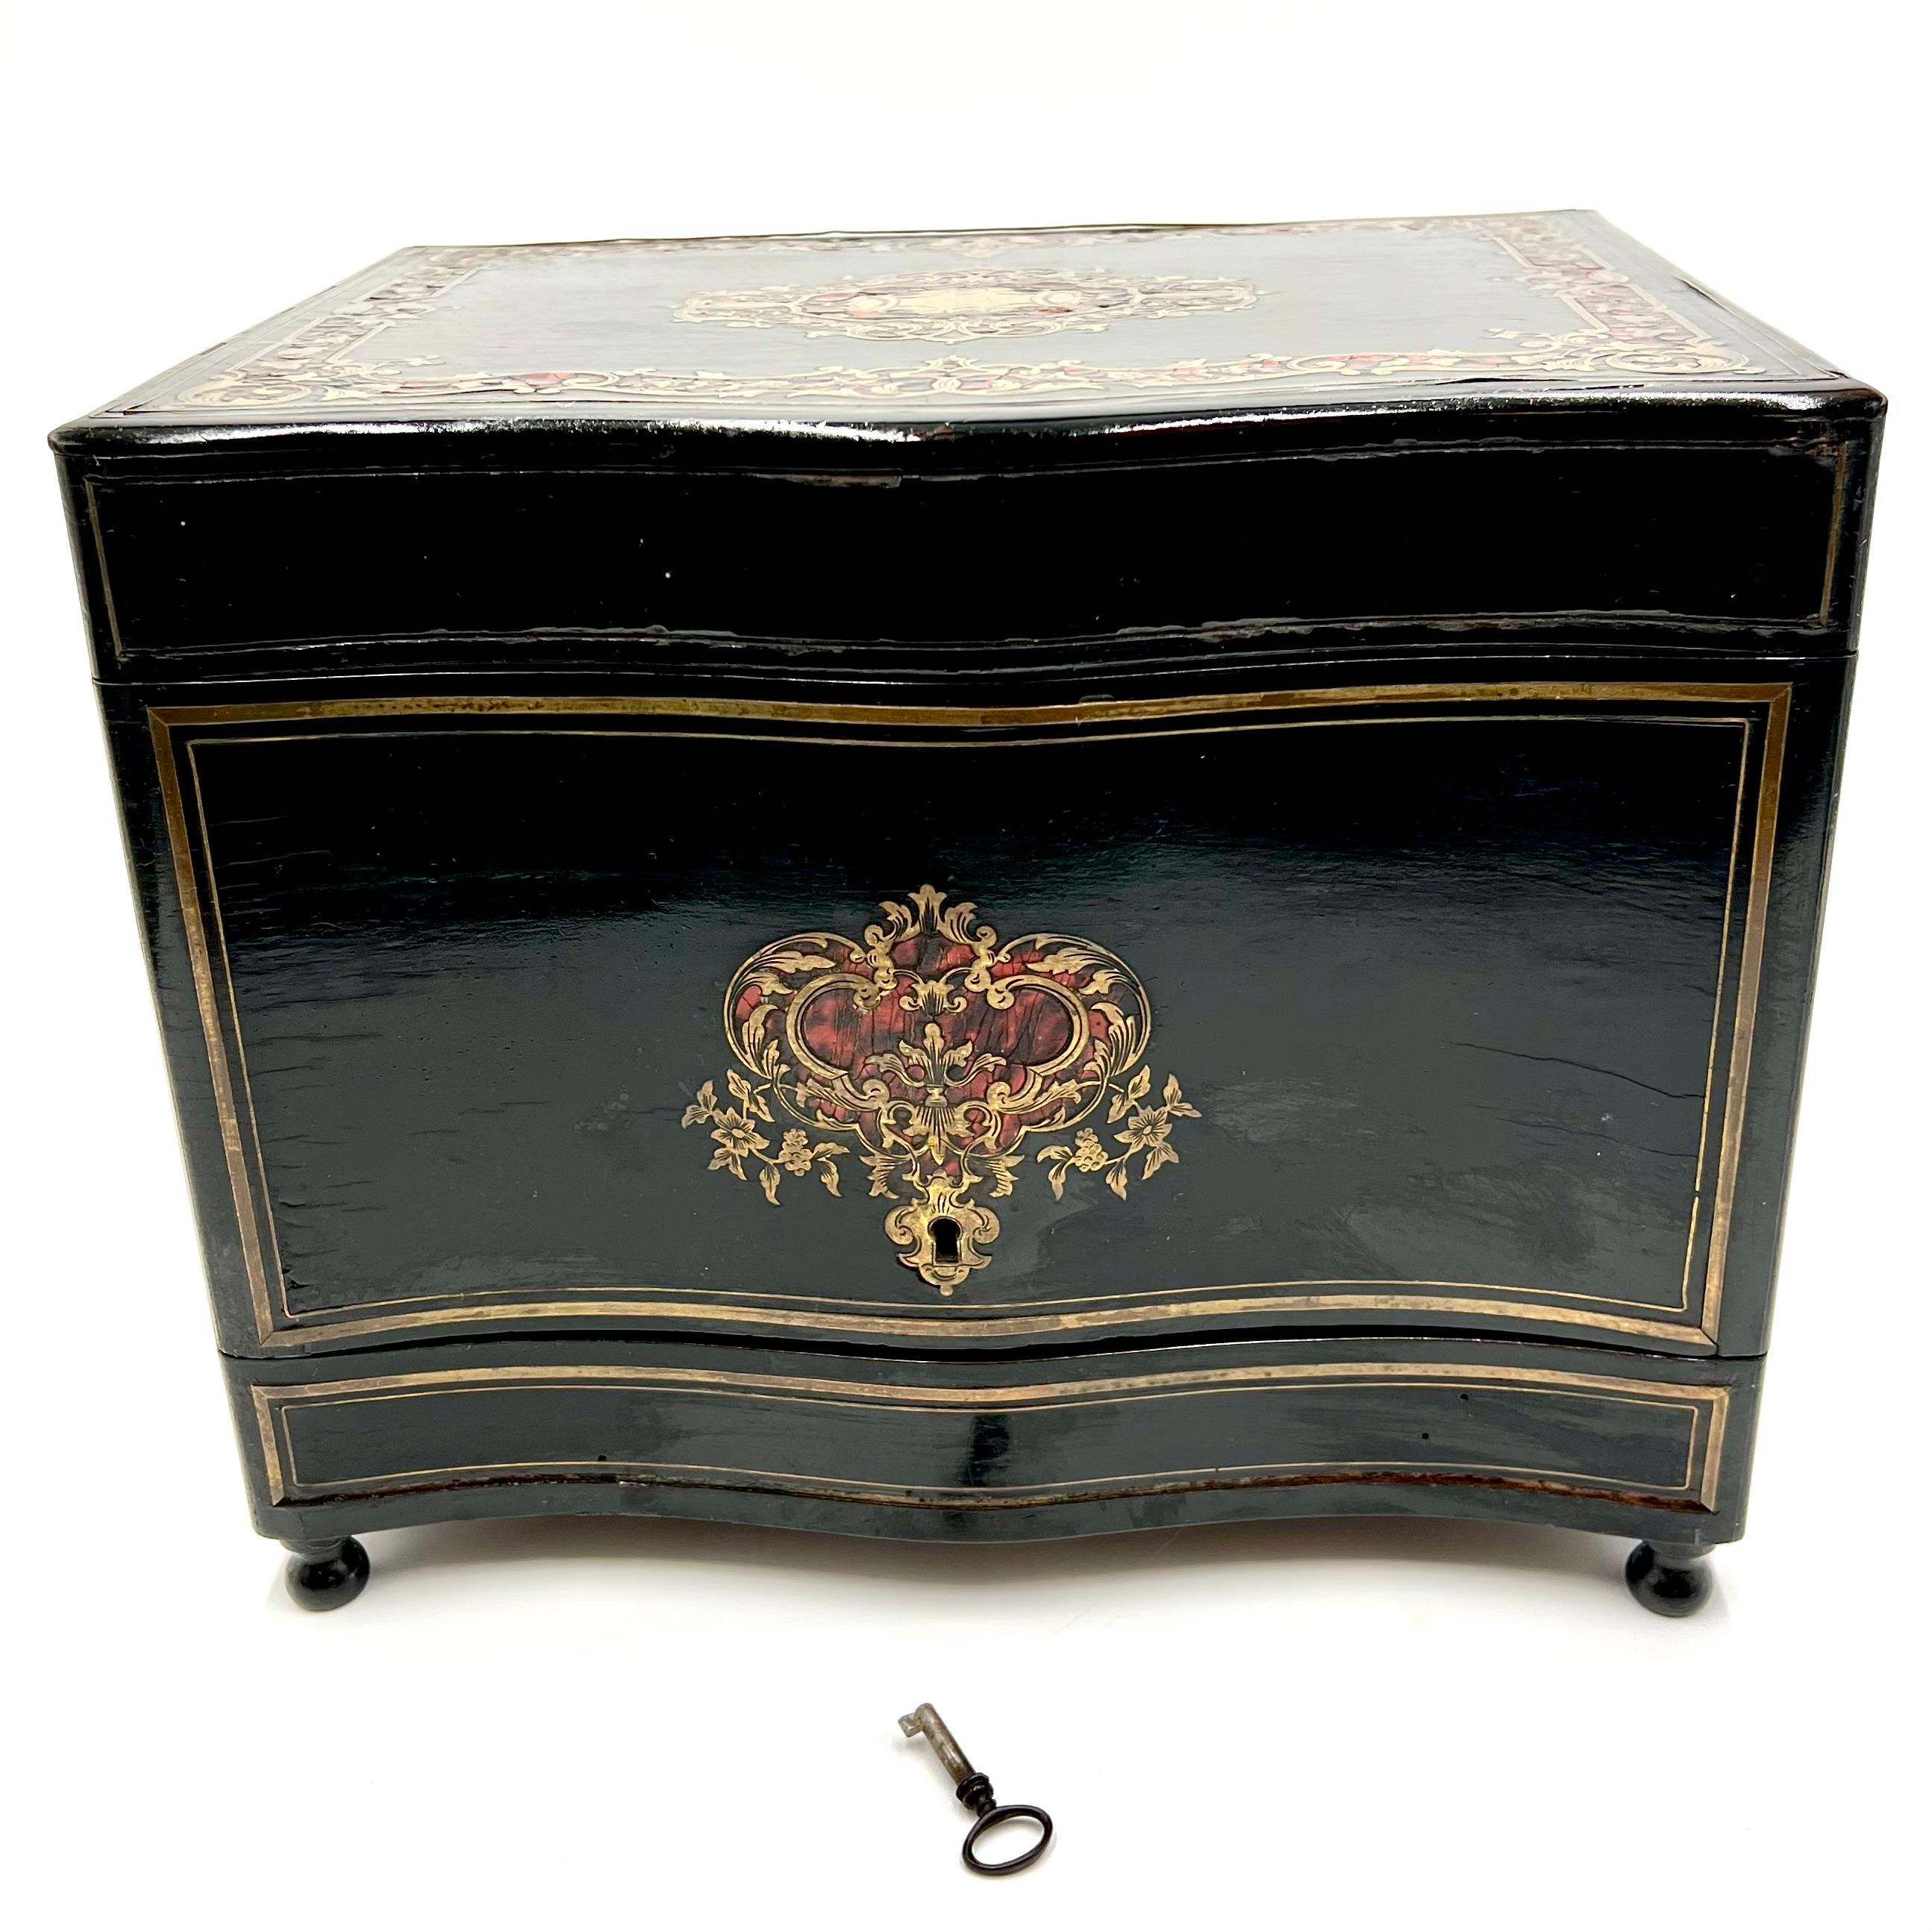 Nous vous présentons une exquise armoire à liqueurs antique française Tantalus qui vous transporte dans l'élégance du milieu et de la fin des années 1800. Cette pièce remarquable a été fabriquée dans le style sophistiqué de Napoléon III, avec du